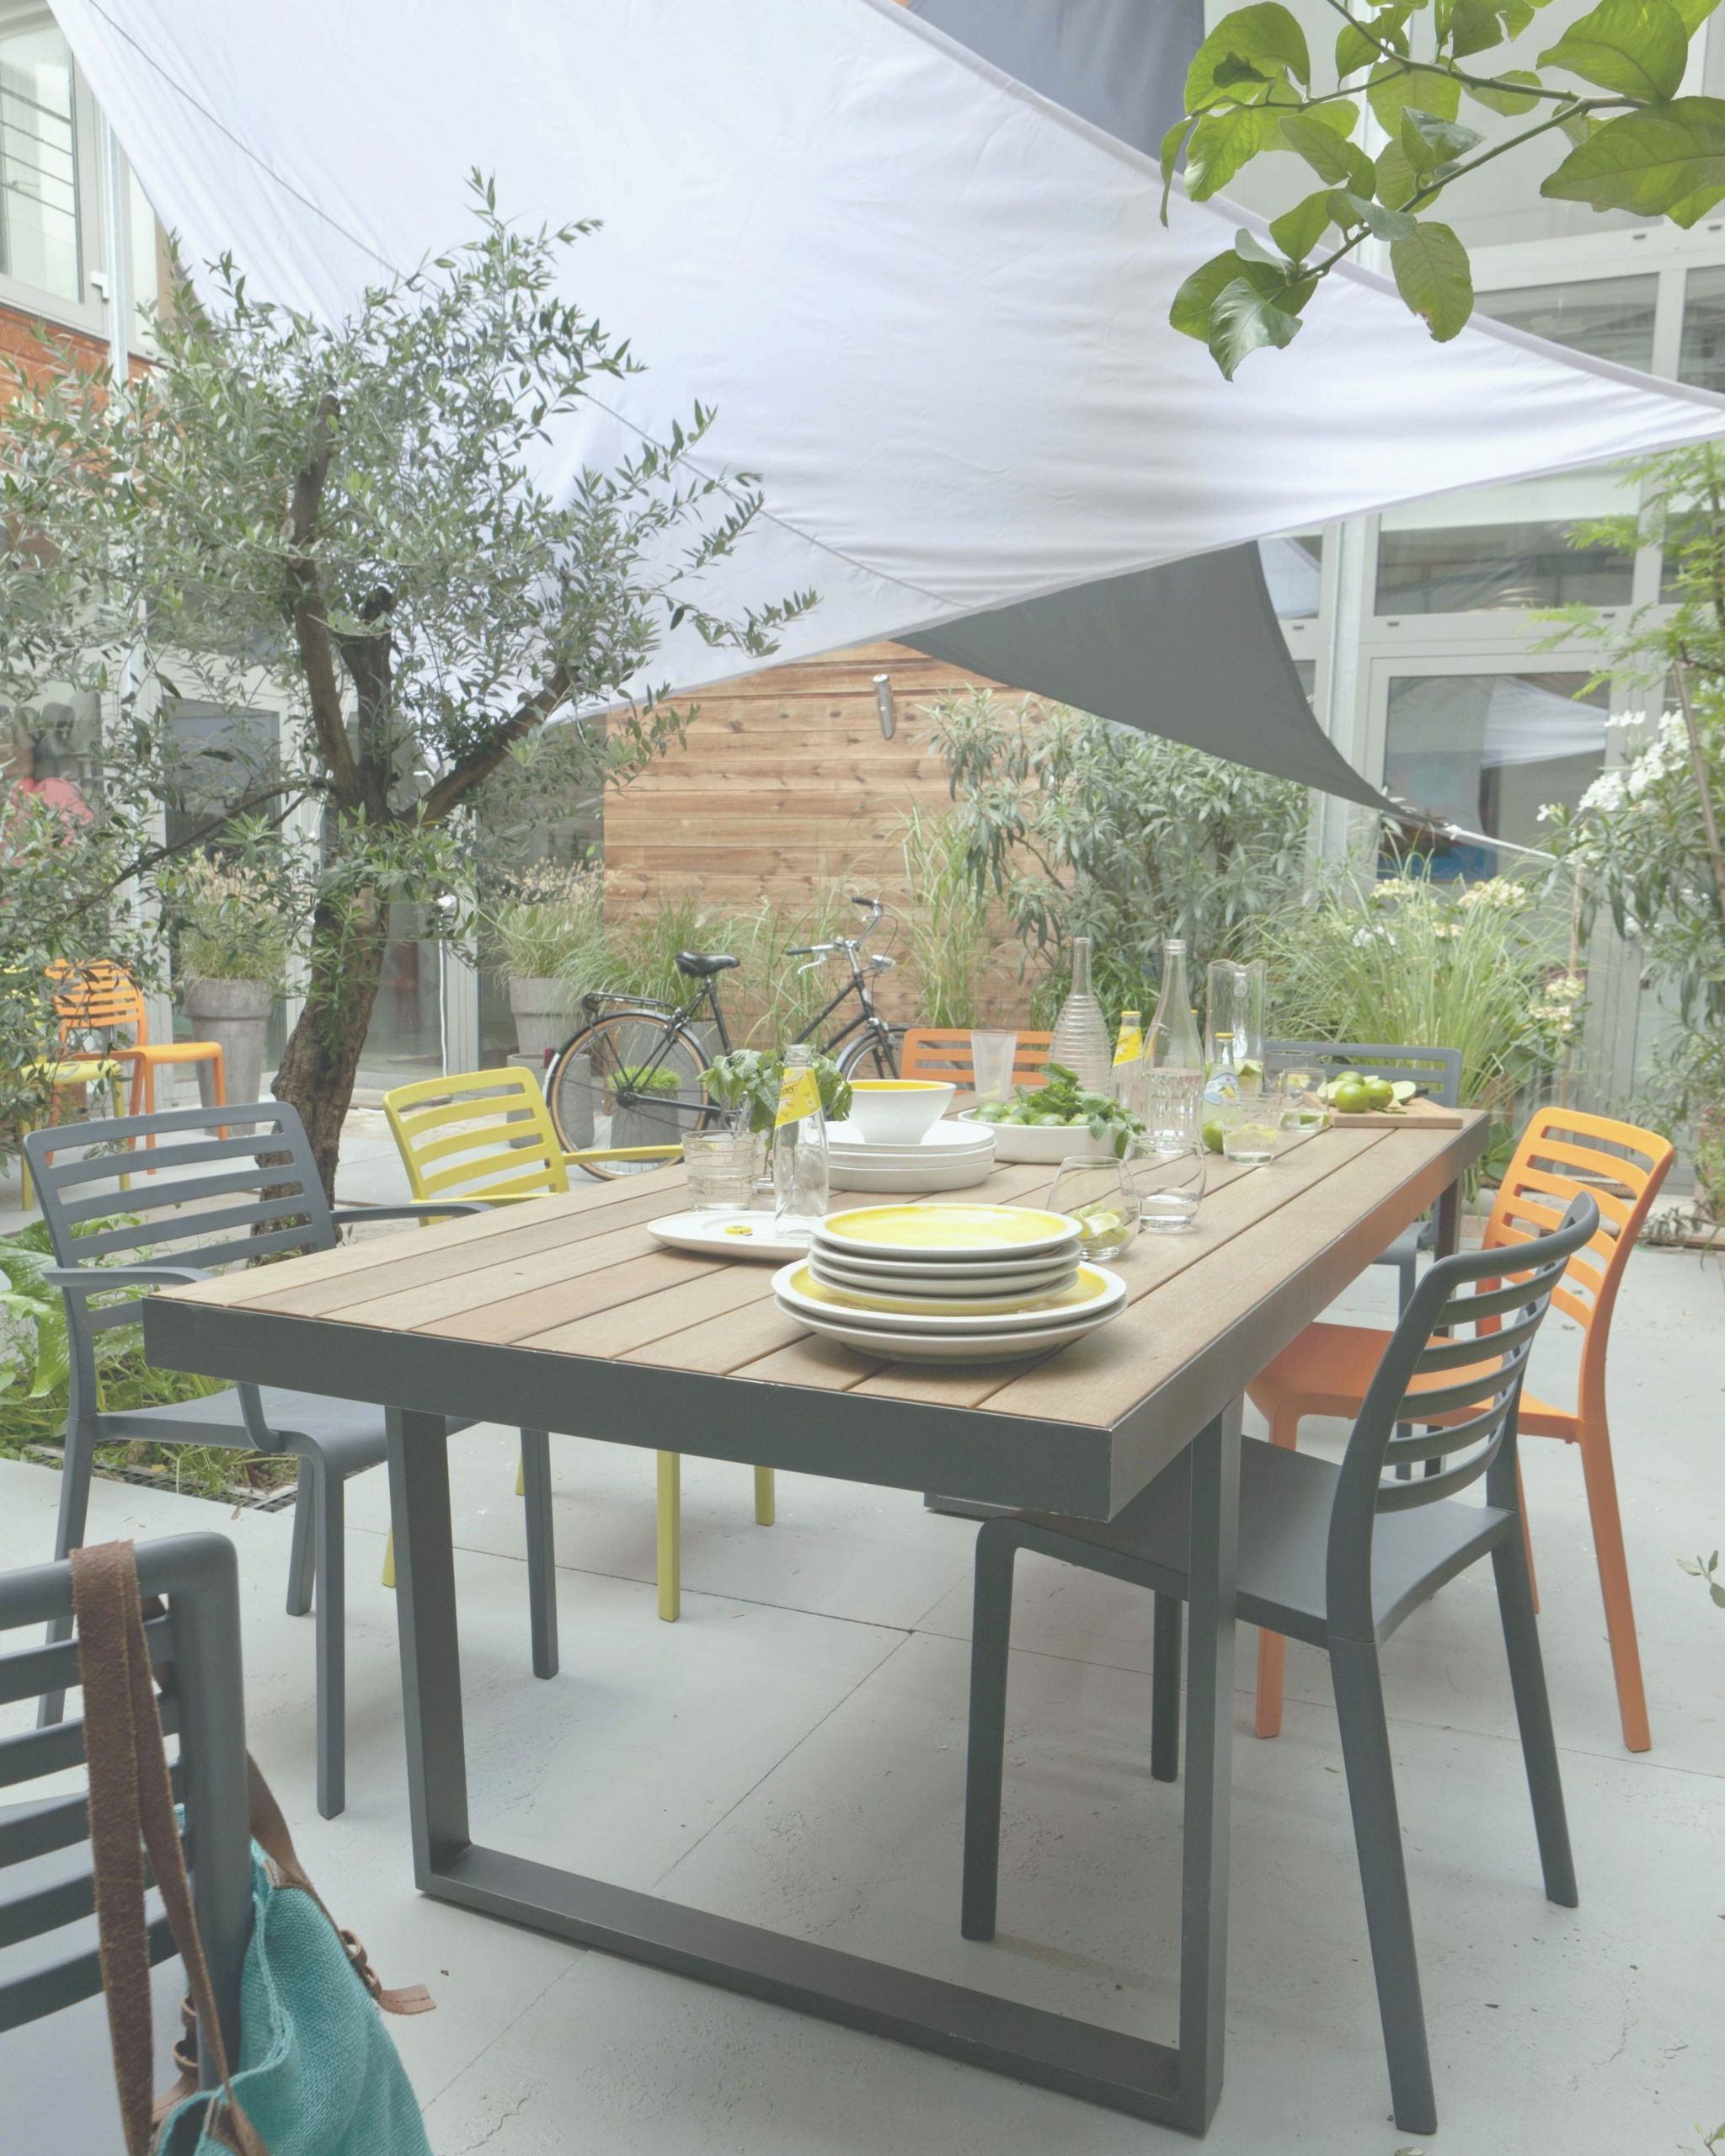 meuble de jardin castorama table de jardin castorama new table en rotin salon de jardin of meuble de jardin castorama